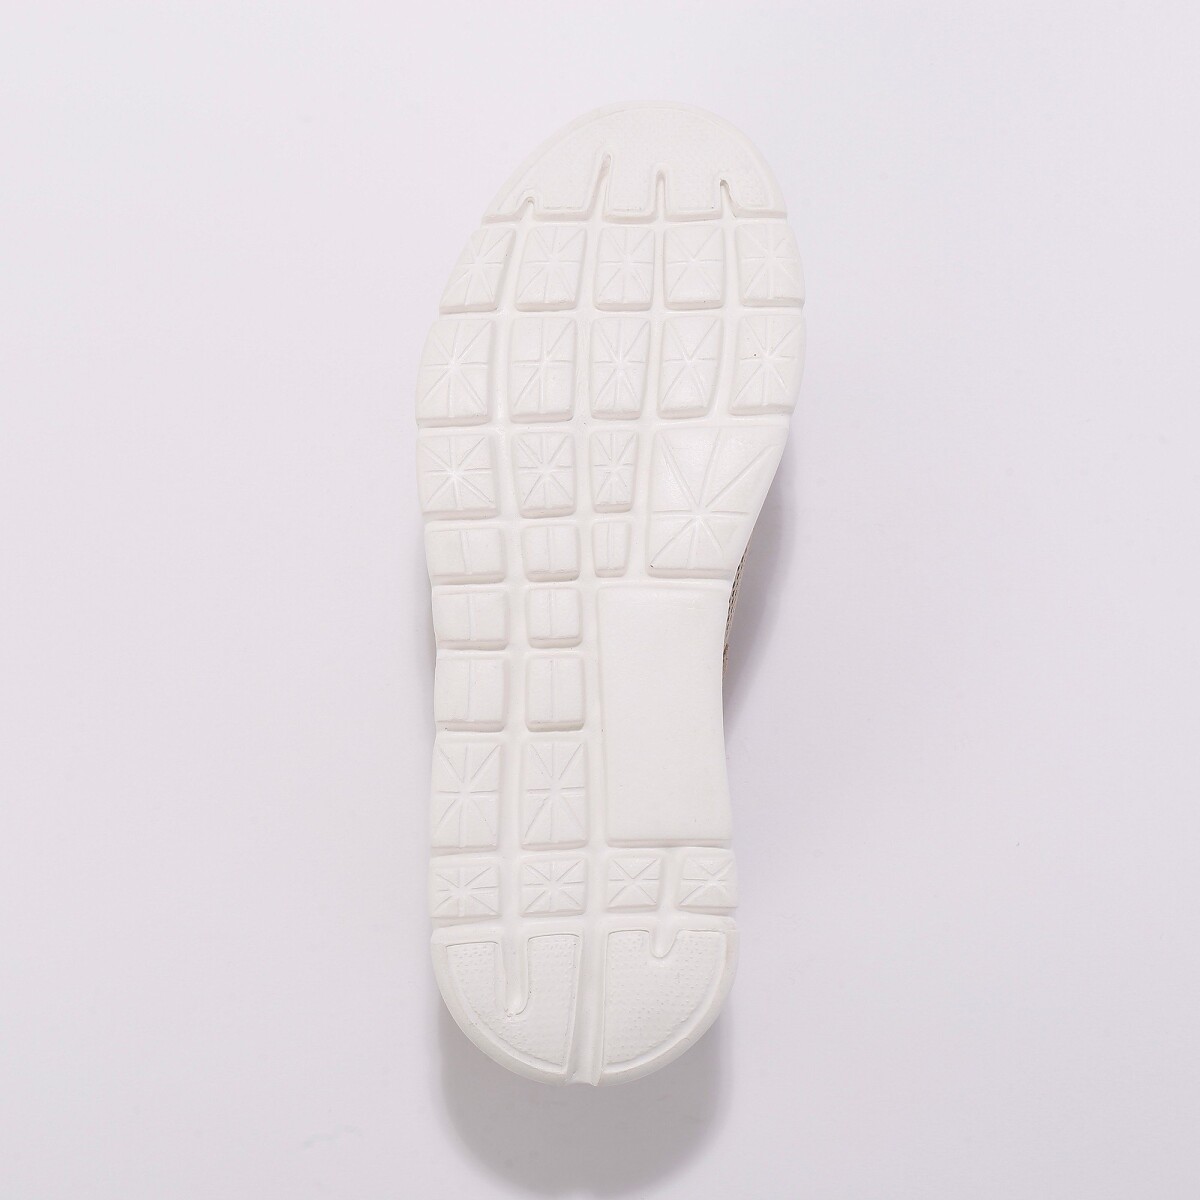 Kožené sandále s plnou špičkou na suchý zips